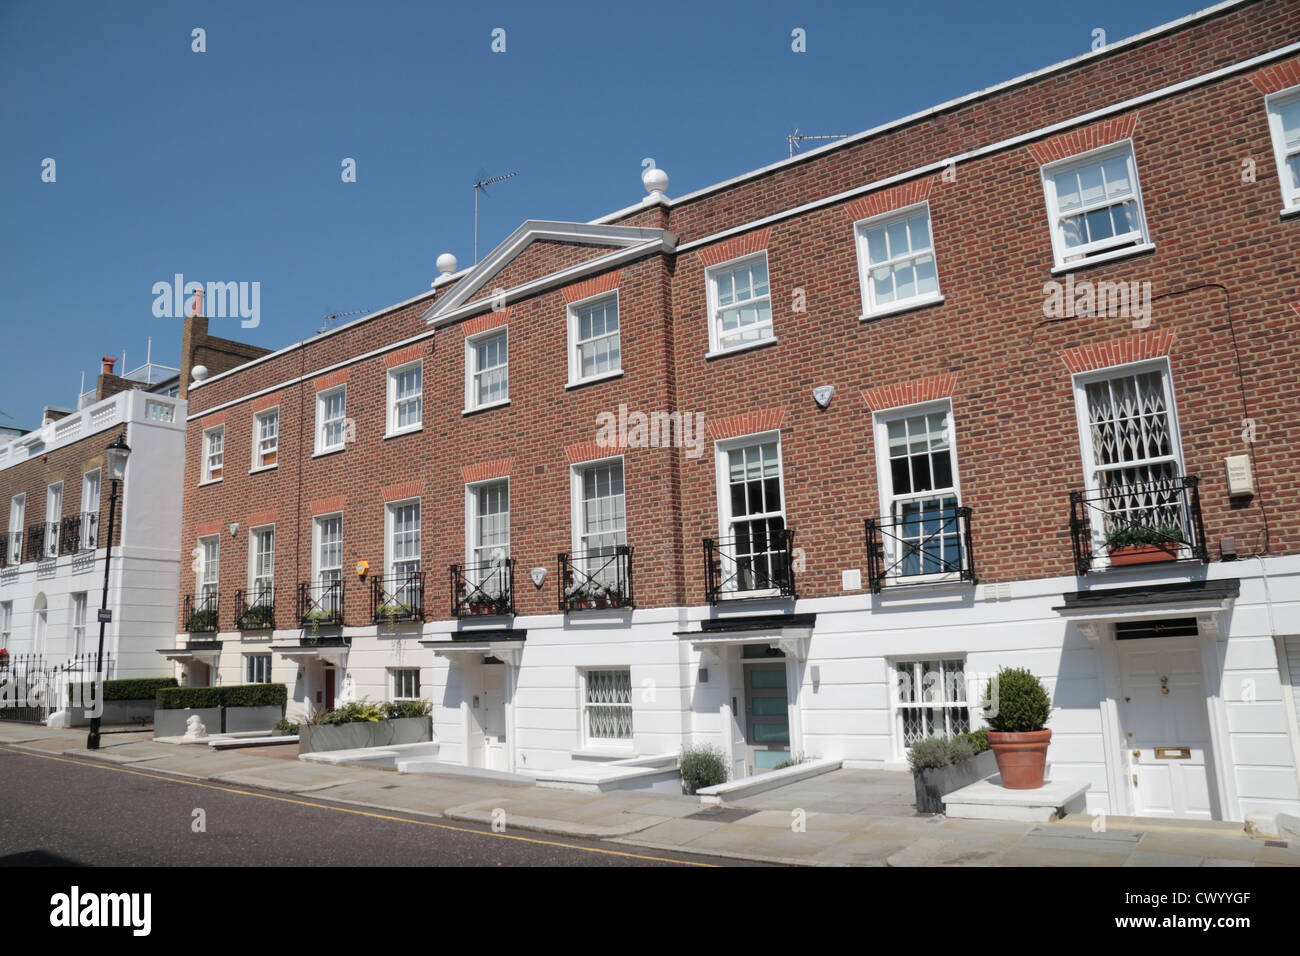 Vue générale de l'histoire moderne de trois propriétés en terrasses le long de la rue Shawfield, Chelsea, London, SW3, au Royaume-Uni. Banque D'Images